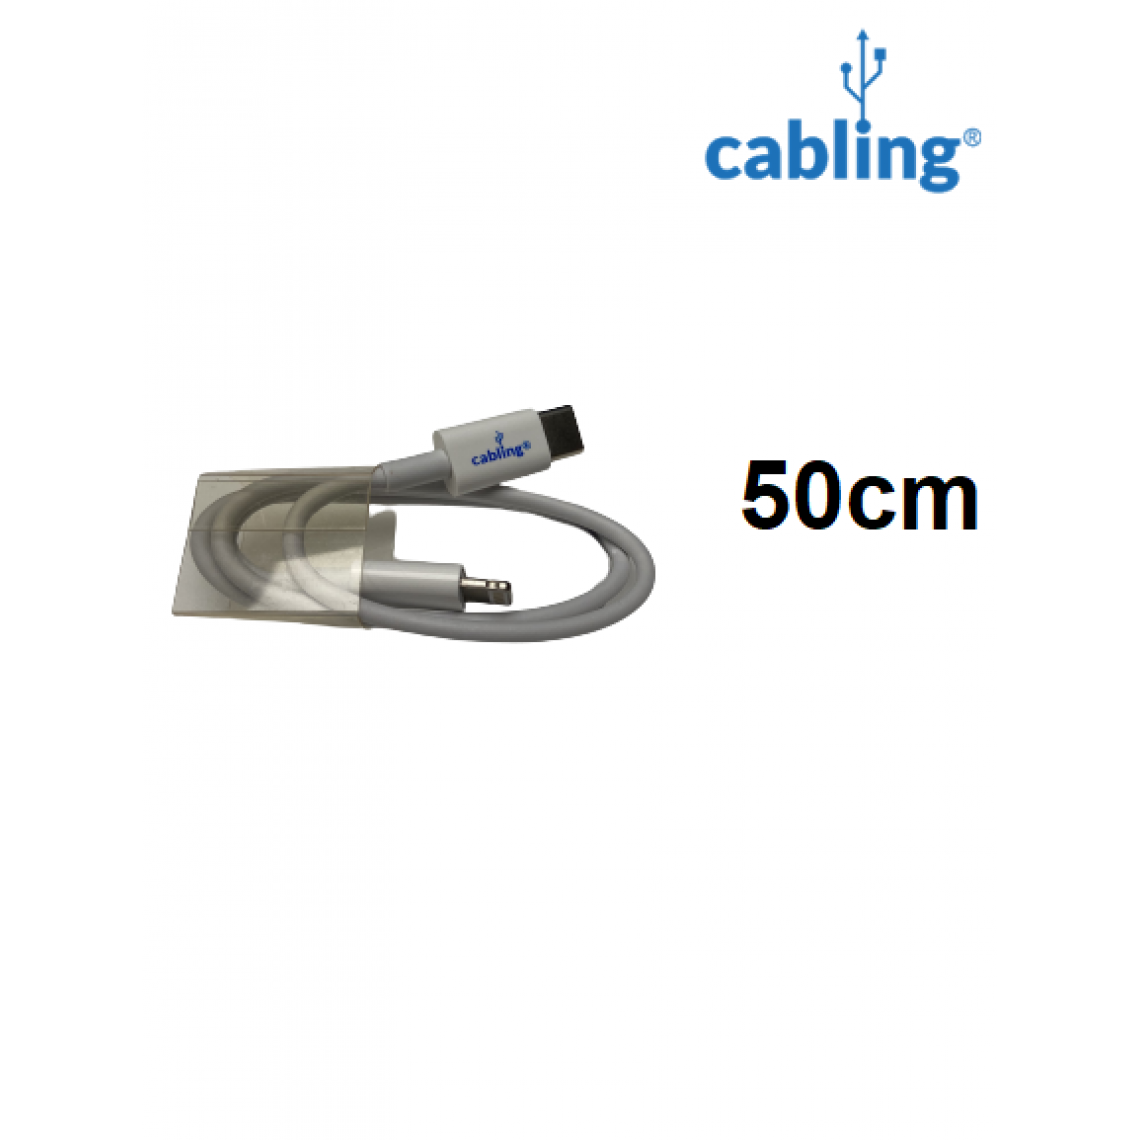 Cabling - CABLING® Câble USB-C vers Lightning, compatible pour iPhone 11 Pro/11 Pro Max - blanc (50cm) - Chargeur secteur téléphone